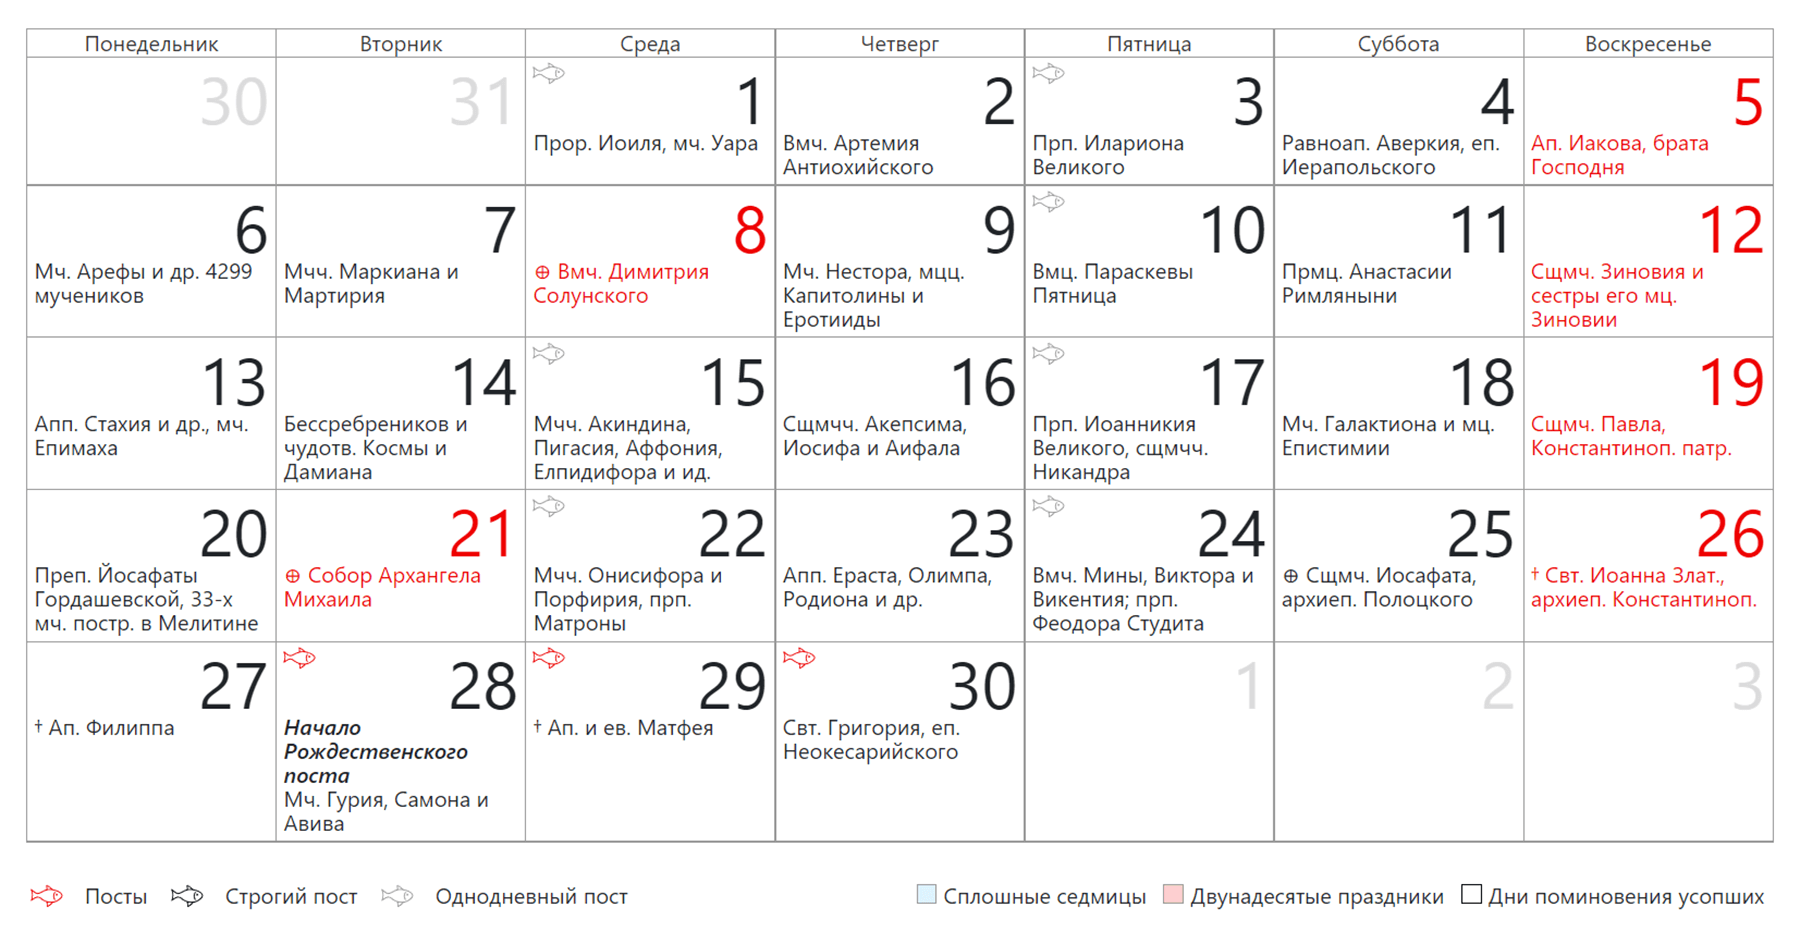 Праздничные ноябре 2023. Православные праздники и даты 2023. Календарь на ноябрь 2023 года. Католические праздники в 2023 году. Православные праздники на 2023 год список.